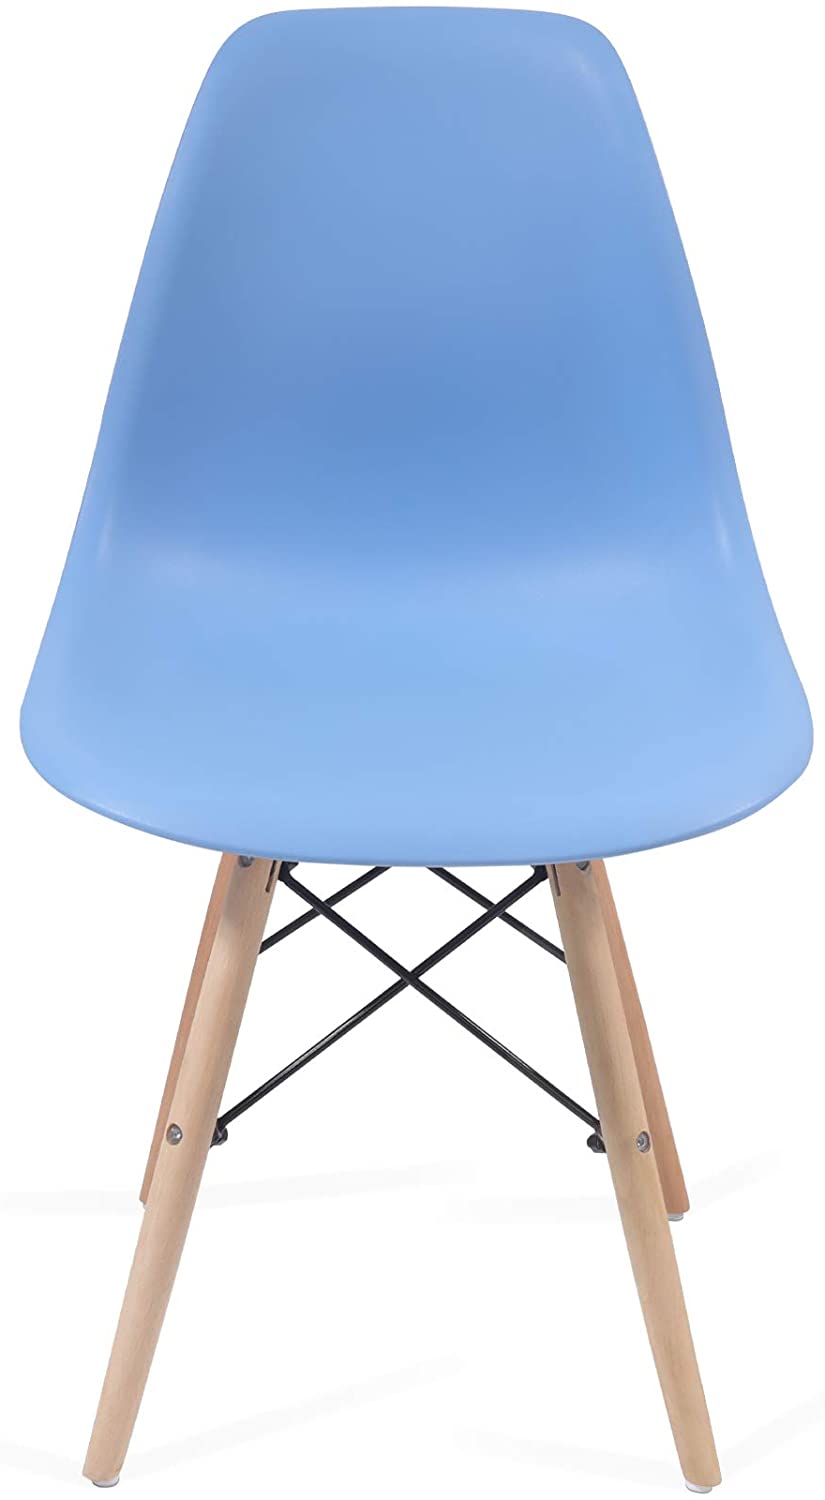 Eetkamerstoelen – Lounge stoelen – Scandinavische stijl – Retro – Vintage – Plastic – Set van 6 – Blauw